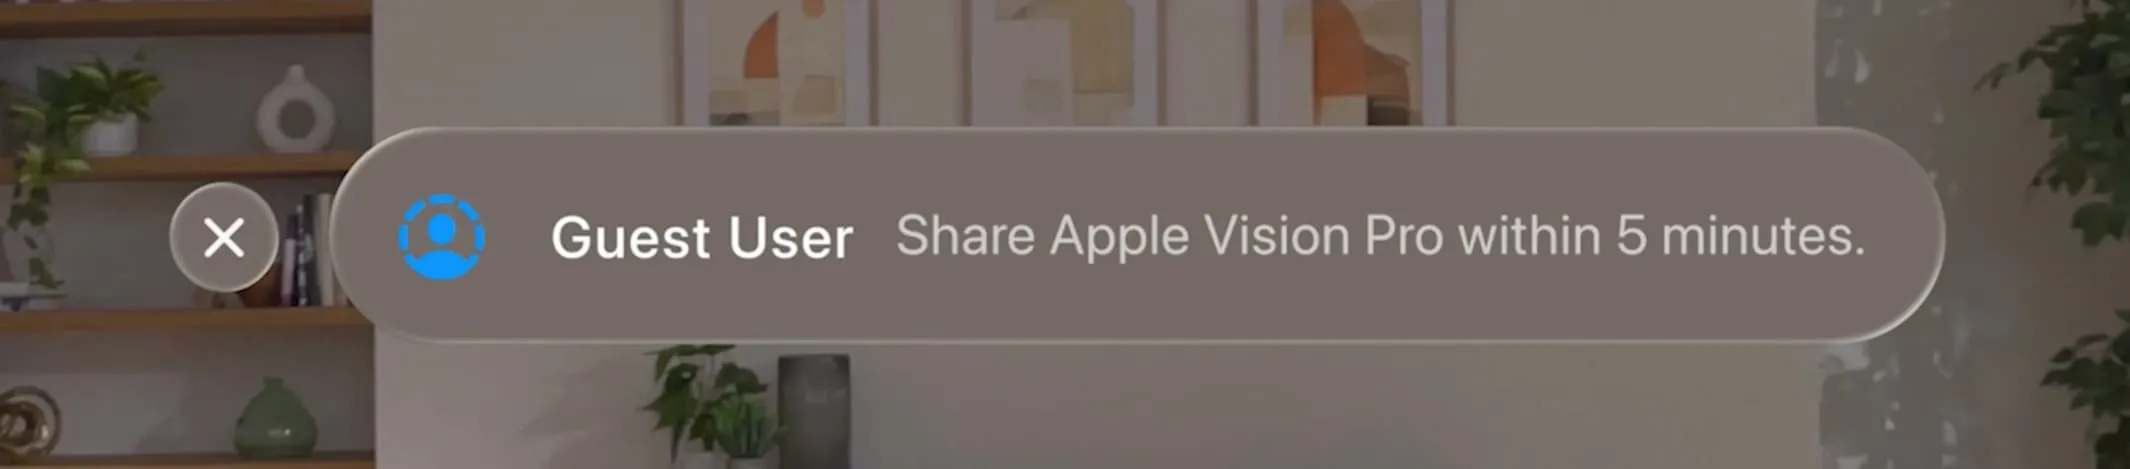 Udostępnij Apple Vision Pro użytkownikowi-gościowi w ciągu 5 minut